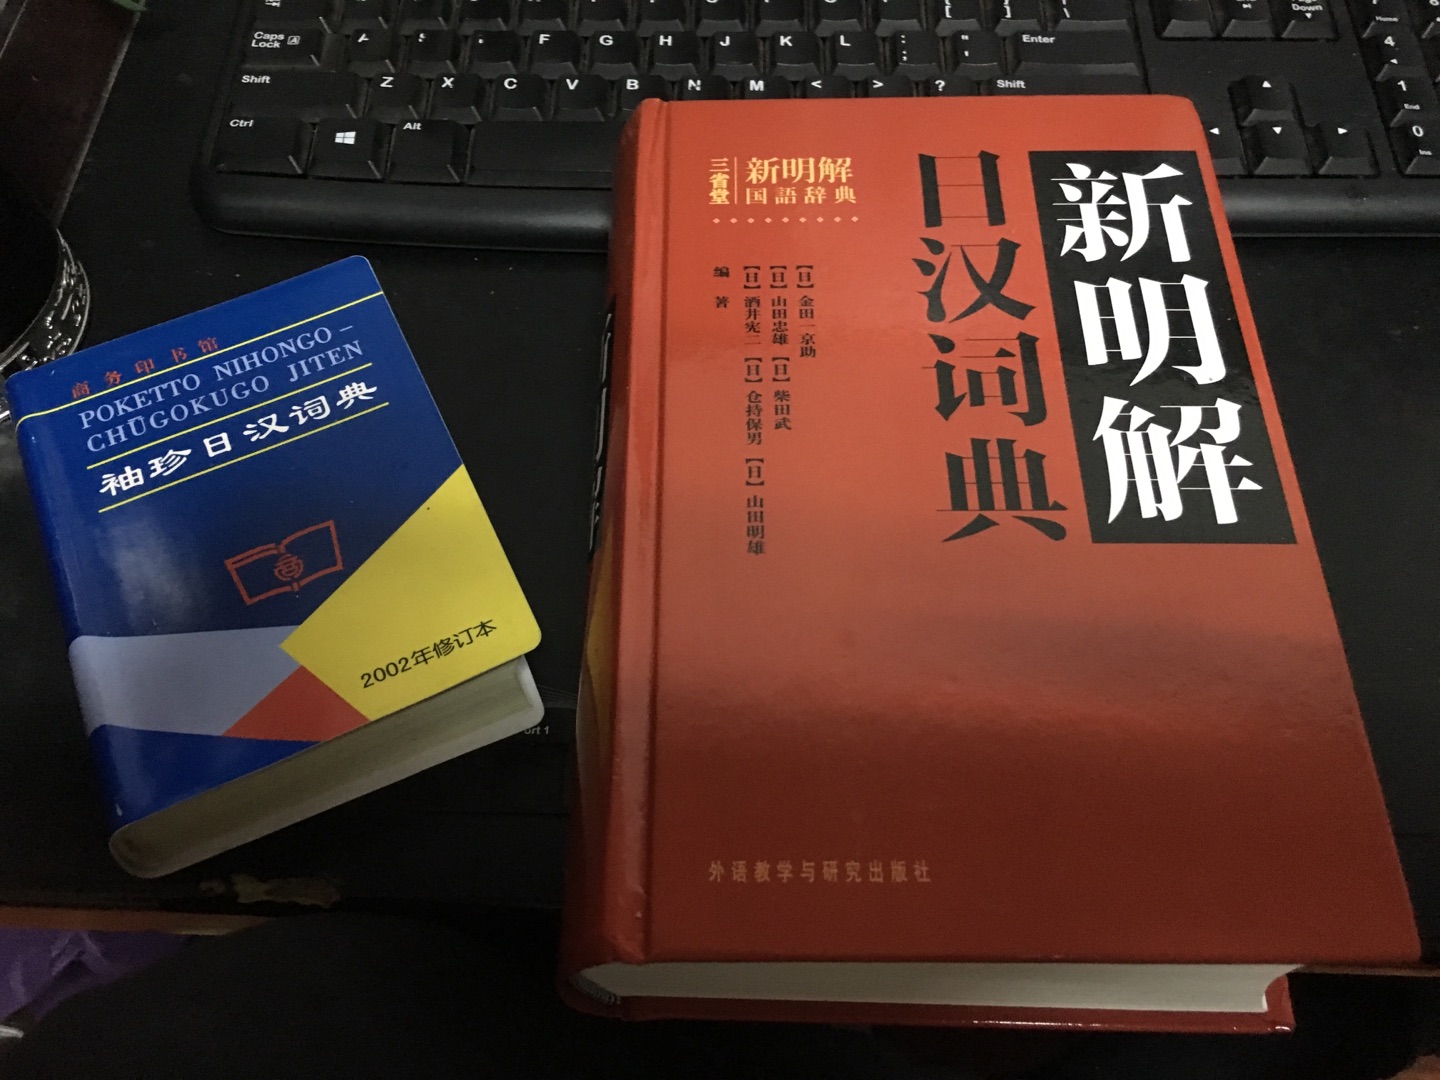 日汉词典内容对于我这样的新手有点难懂，努力学习吧！